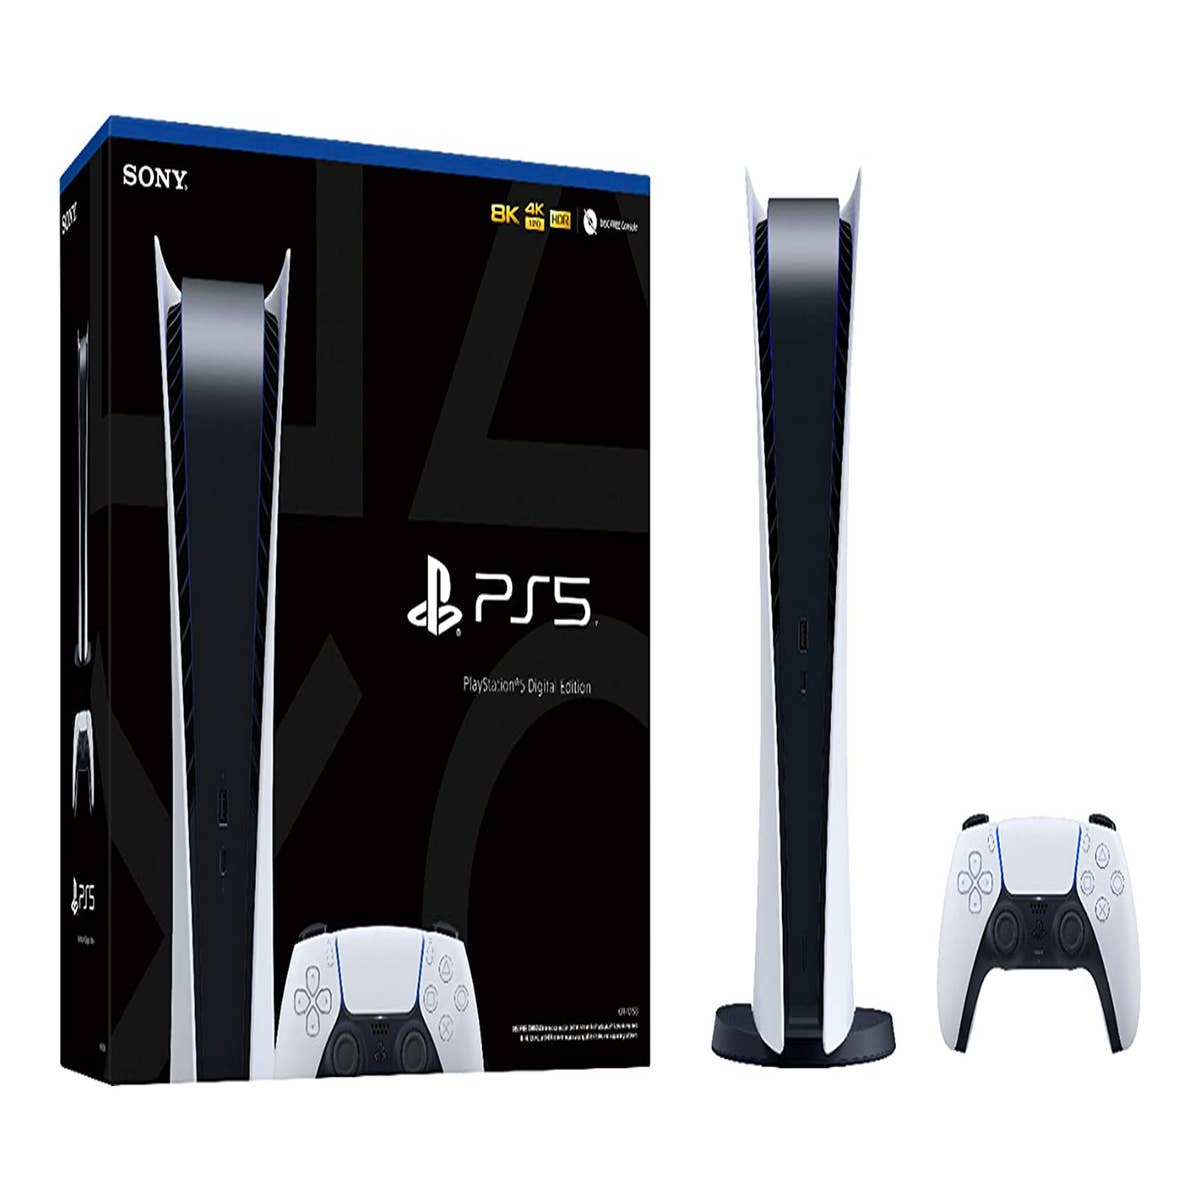 Sonys Playstation 5 Digital Renders